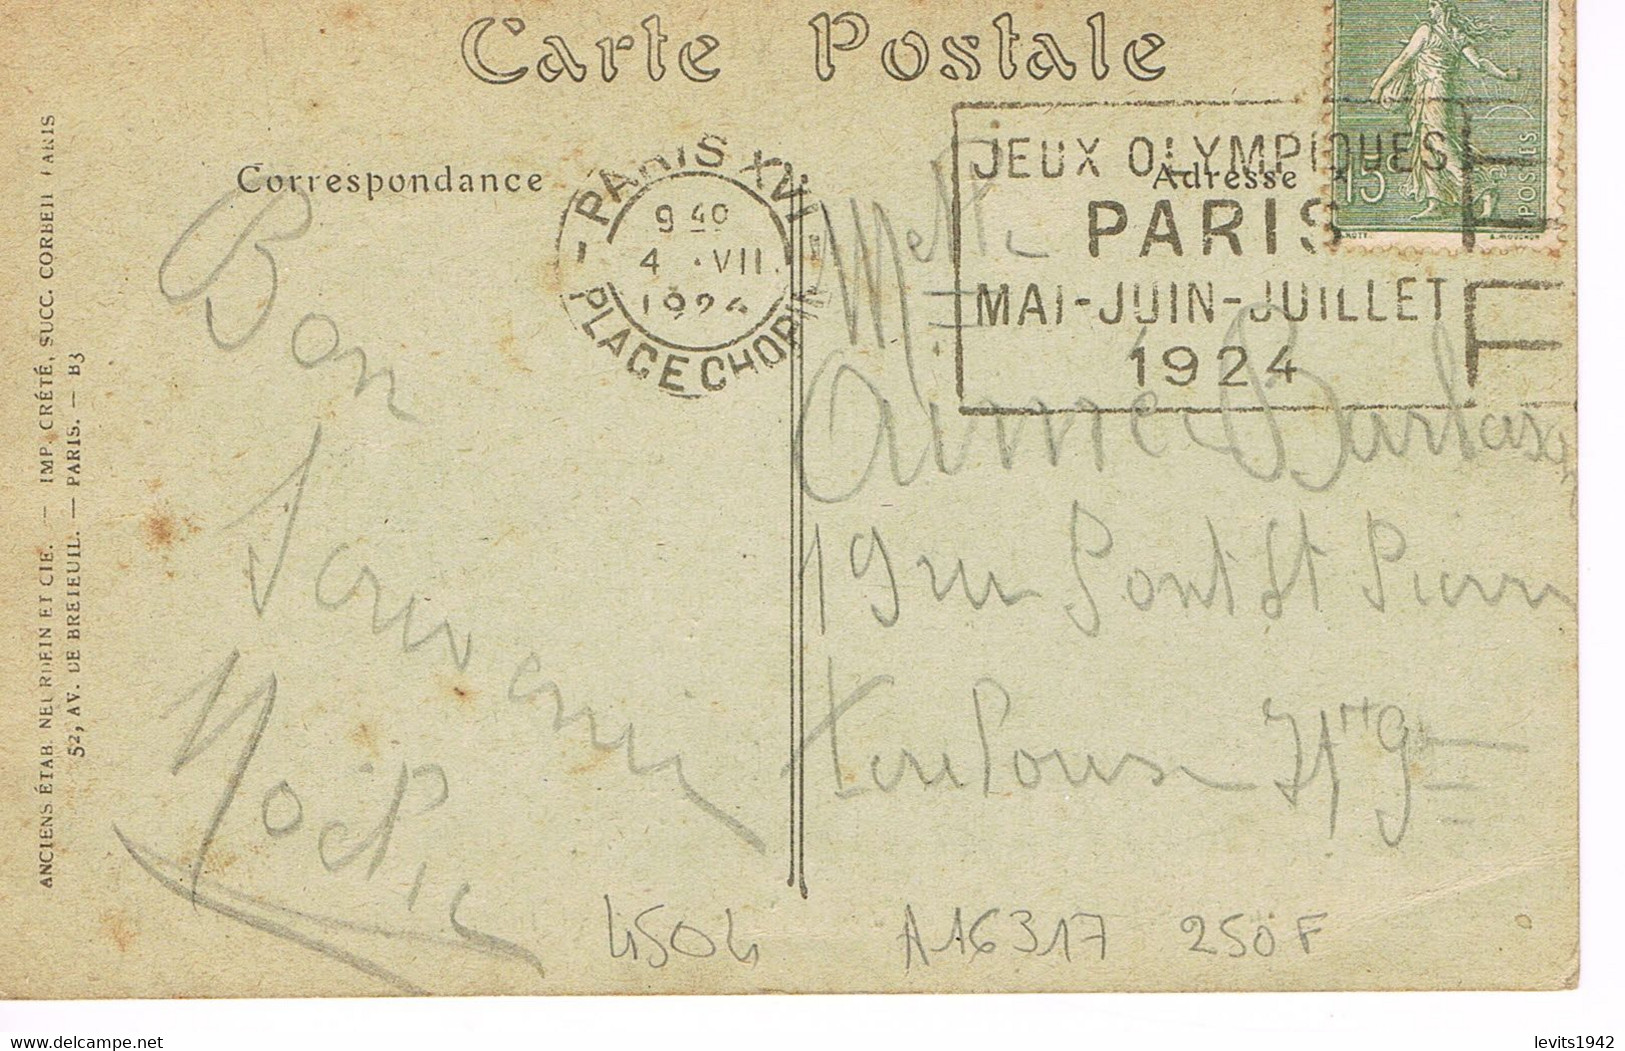 JEUX OLYMPIQUES 1924 -  MARQUE POSTALE - ESCRIME - POLO - JOUR DE COMPETITION - 04-07 - - Sommer 1924: Paris